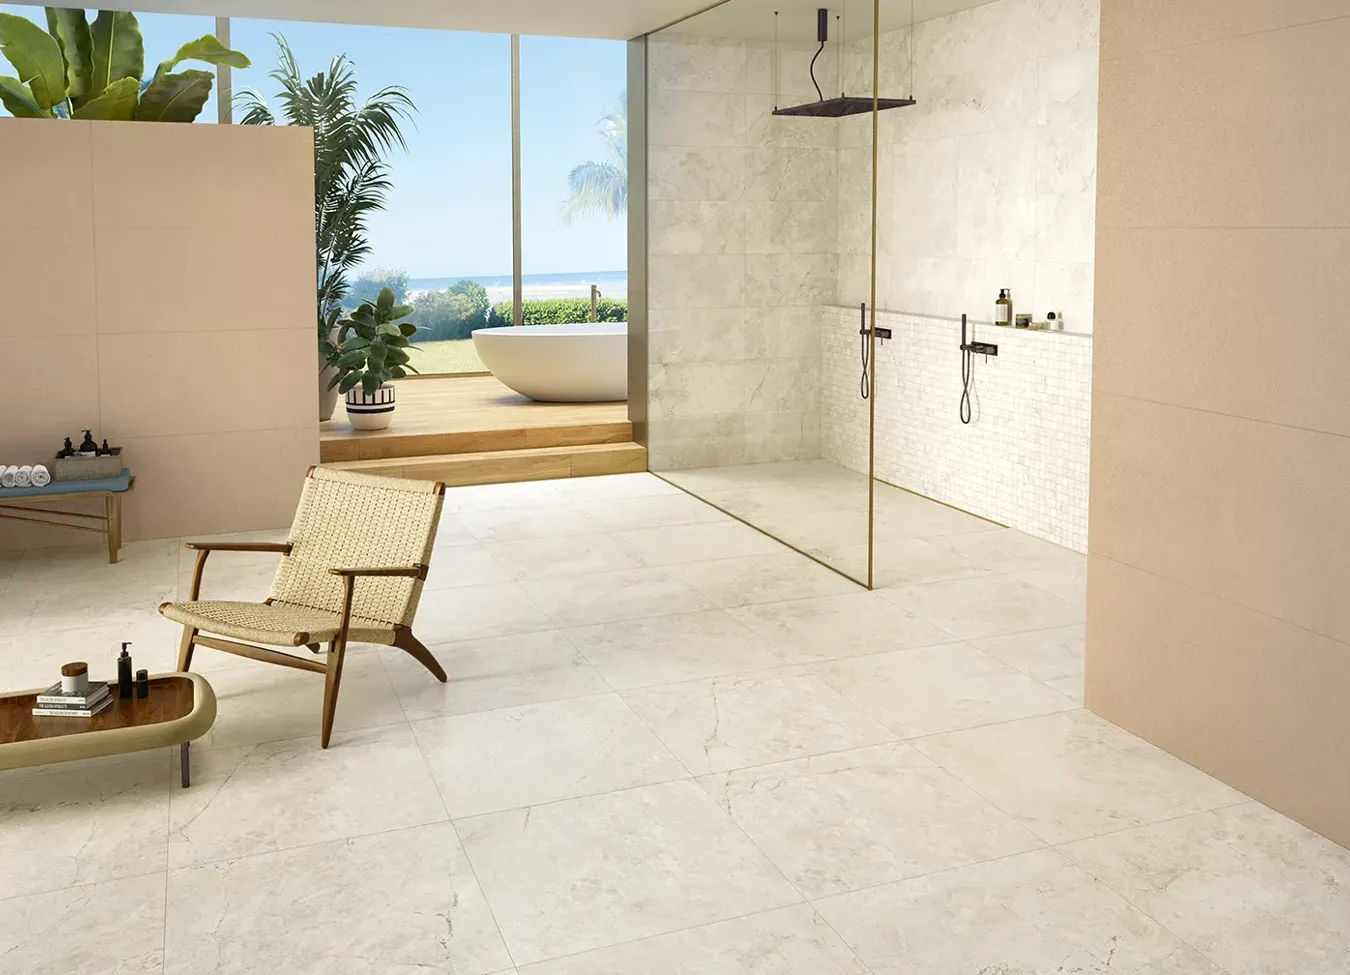 Salle de bain ouverte sur l'extérieur avec receveur de douche effet pierre de la collection Omnia, fusion parfaite de l'intérieur et de l'extérieur.